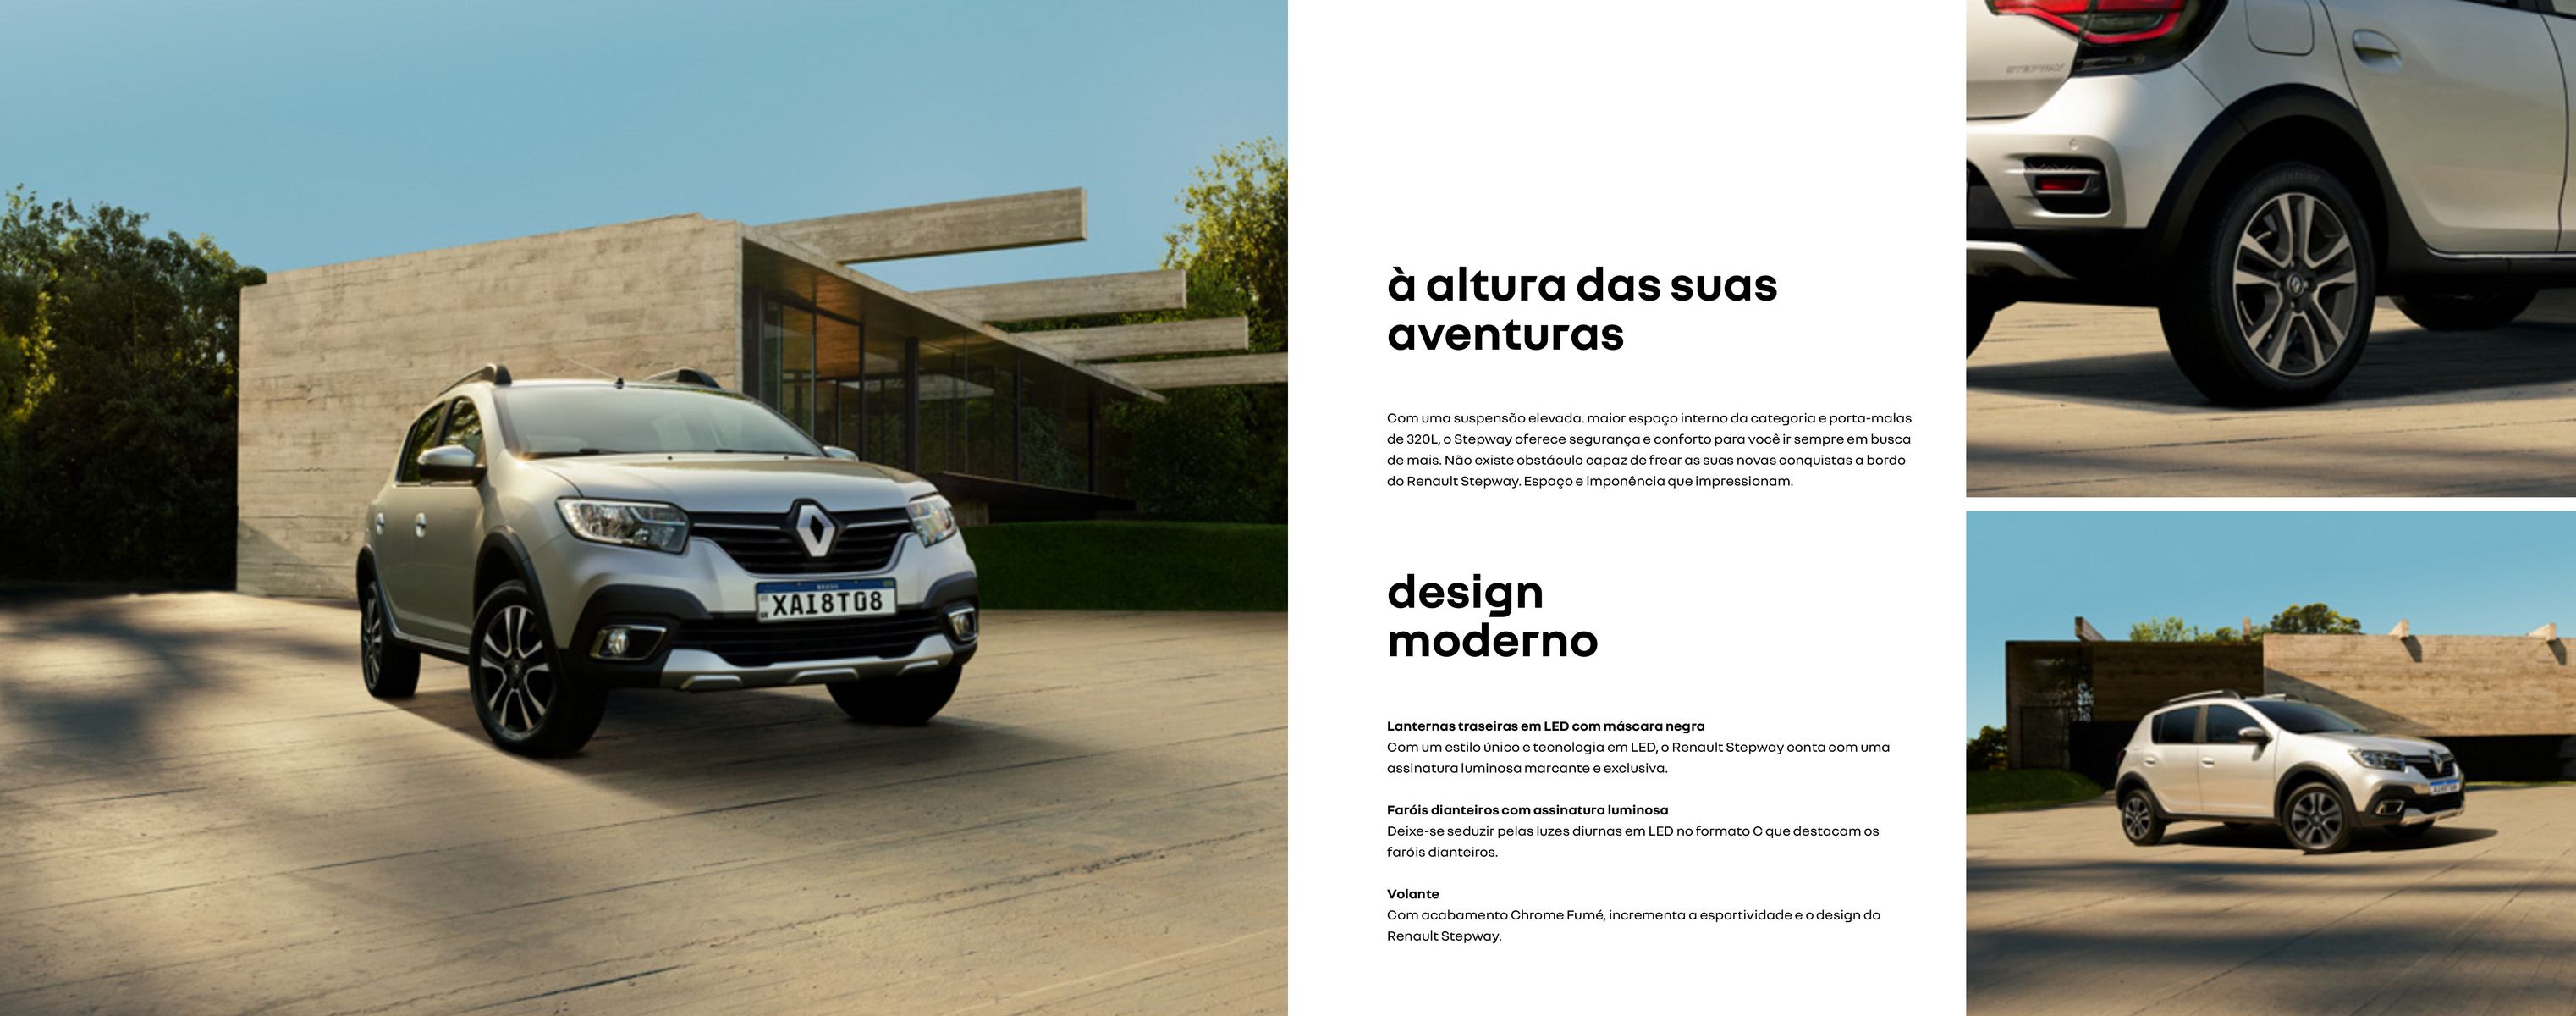 Novo Renault Stepway: segurança, conforto e modernidade em uma única opção de veículo